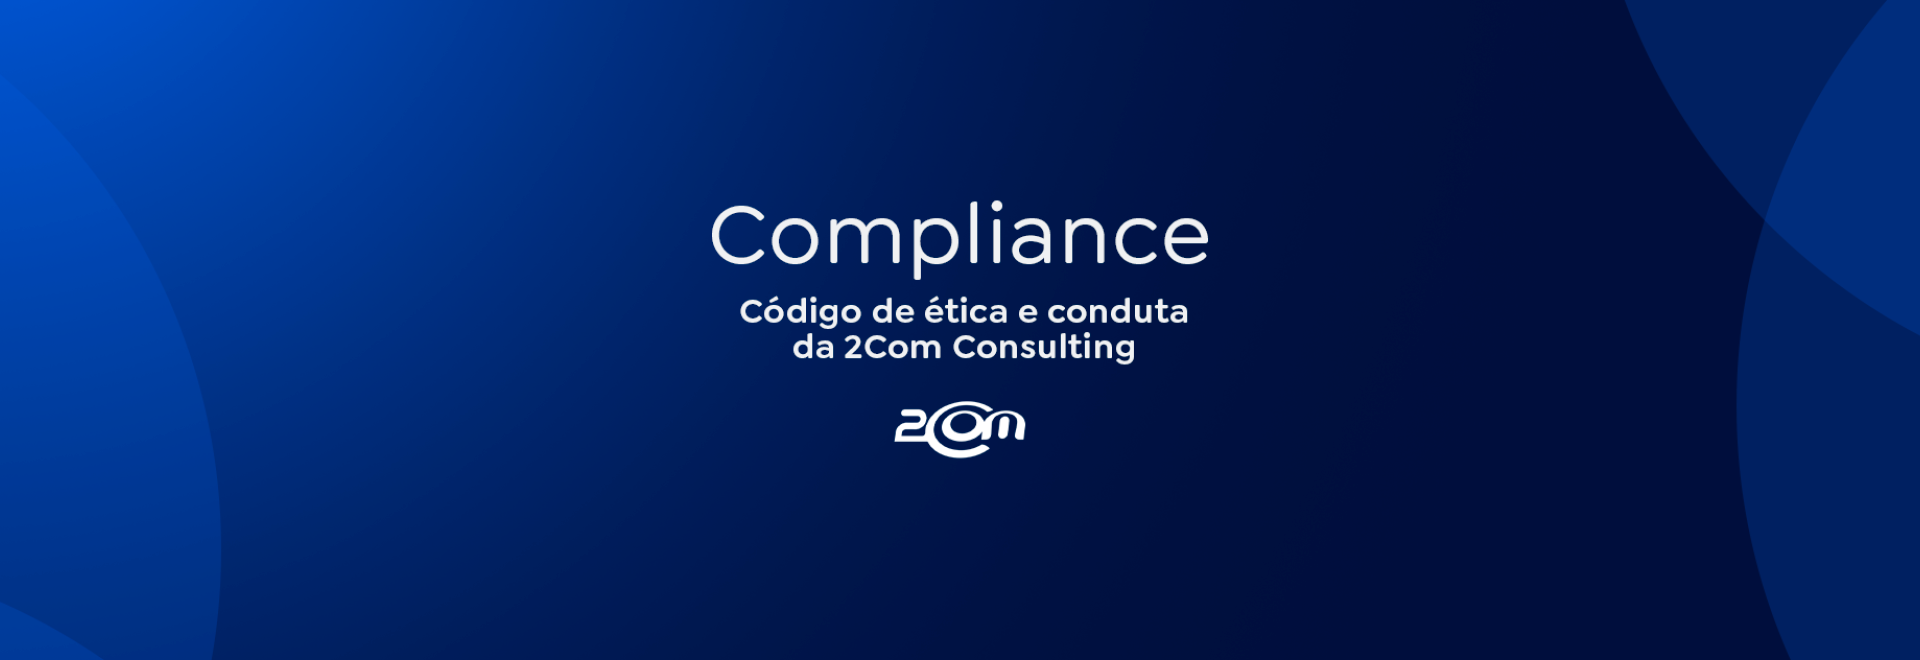 Imagem com fundo azul com gradients e formas geométricas, qual está escrito Compliance, Código de ética e conduta da 2Com Consulting